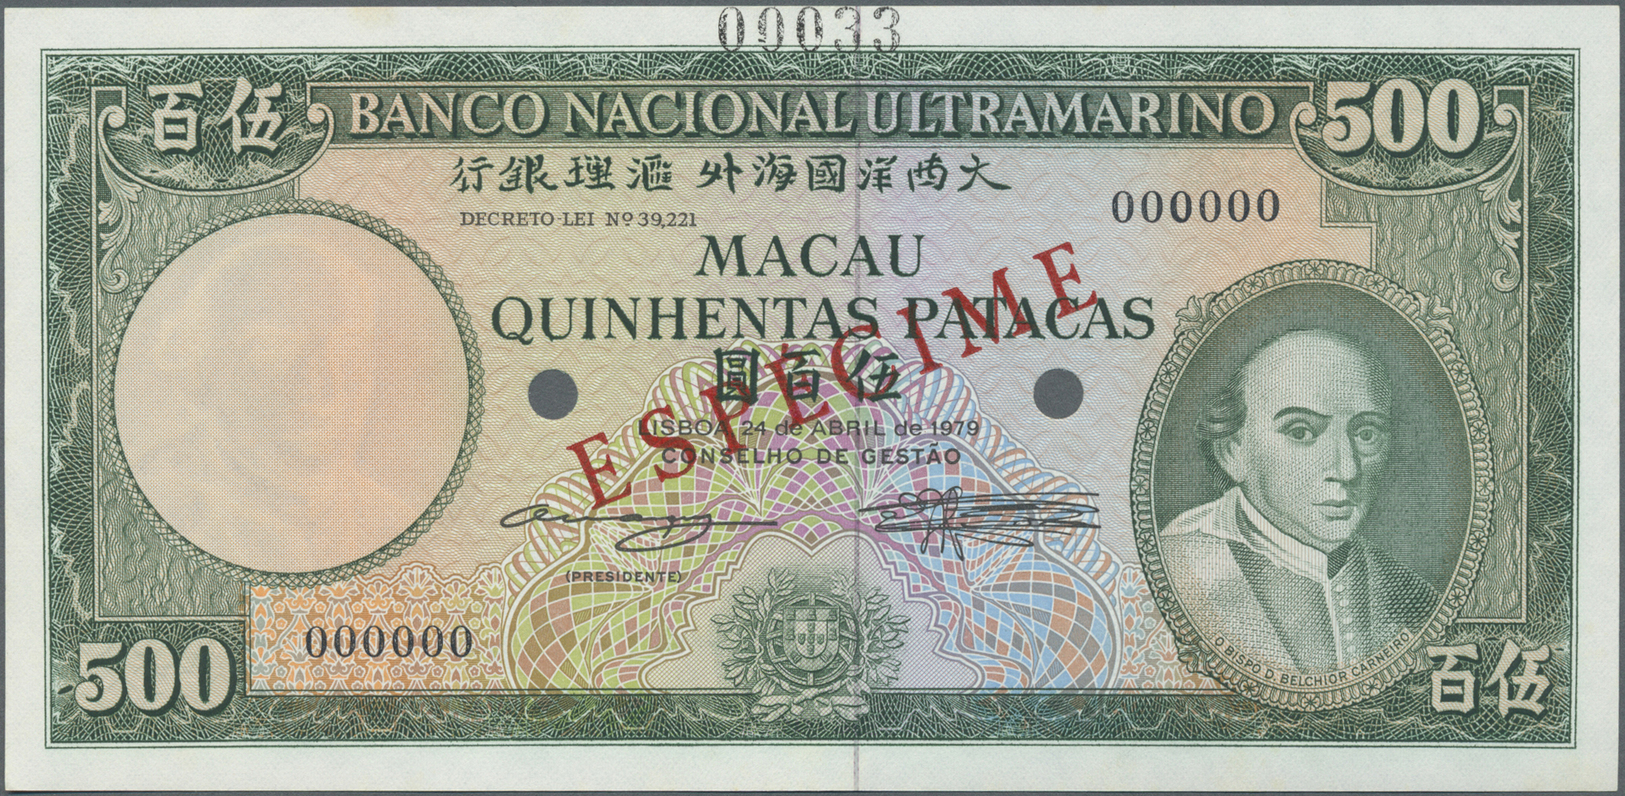 01606 Macau / Macao: 500 Patacas 1979 Specimen P. 57s, Zero Serial Numbers And Red Specimen Overprint, In Condition: UNC - Macau